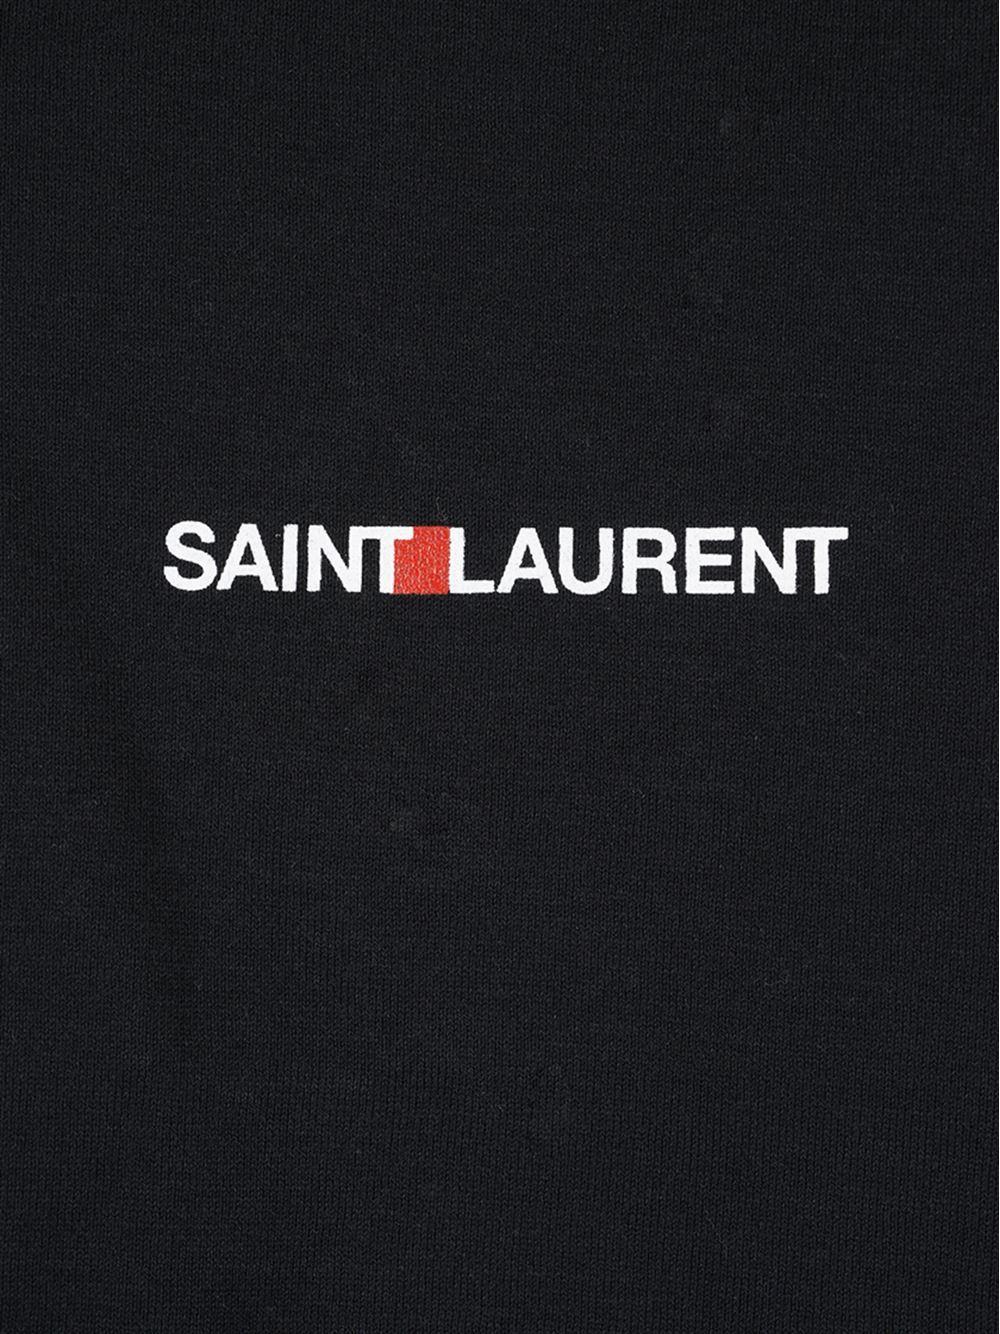 Saint Laurent Cotton Logo T-shirt in Black for Men - Lyst